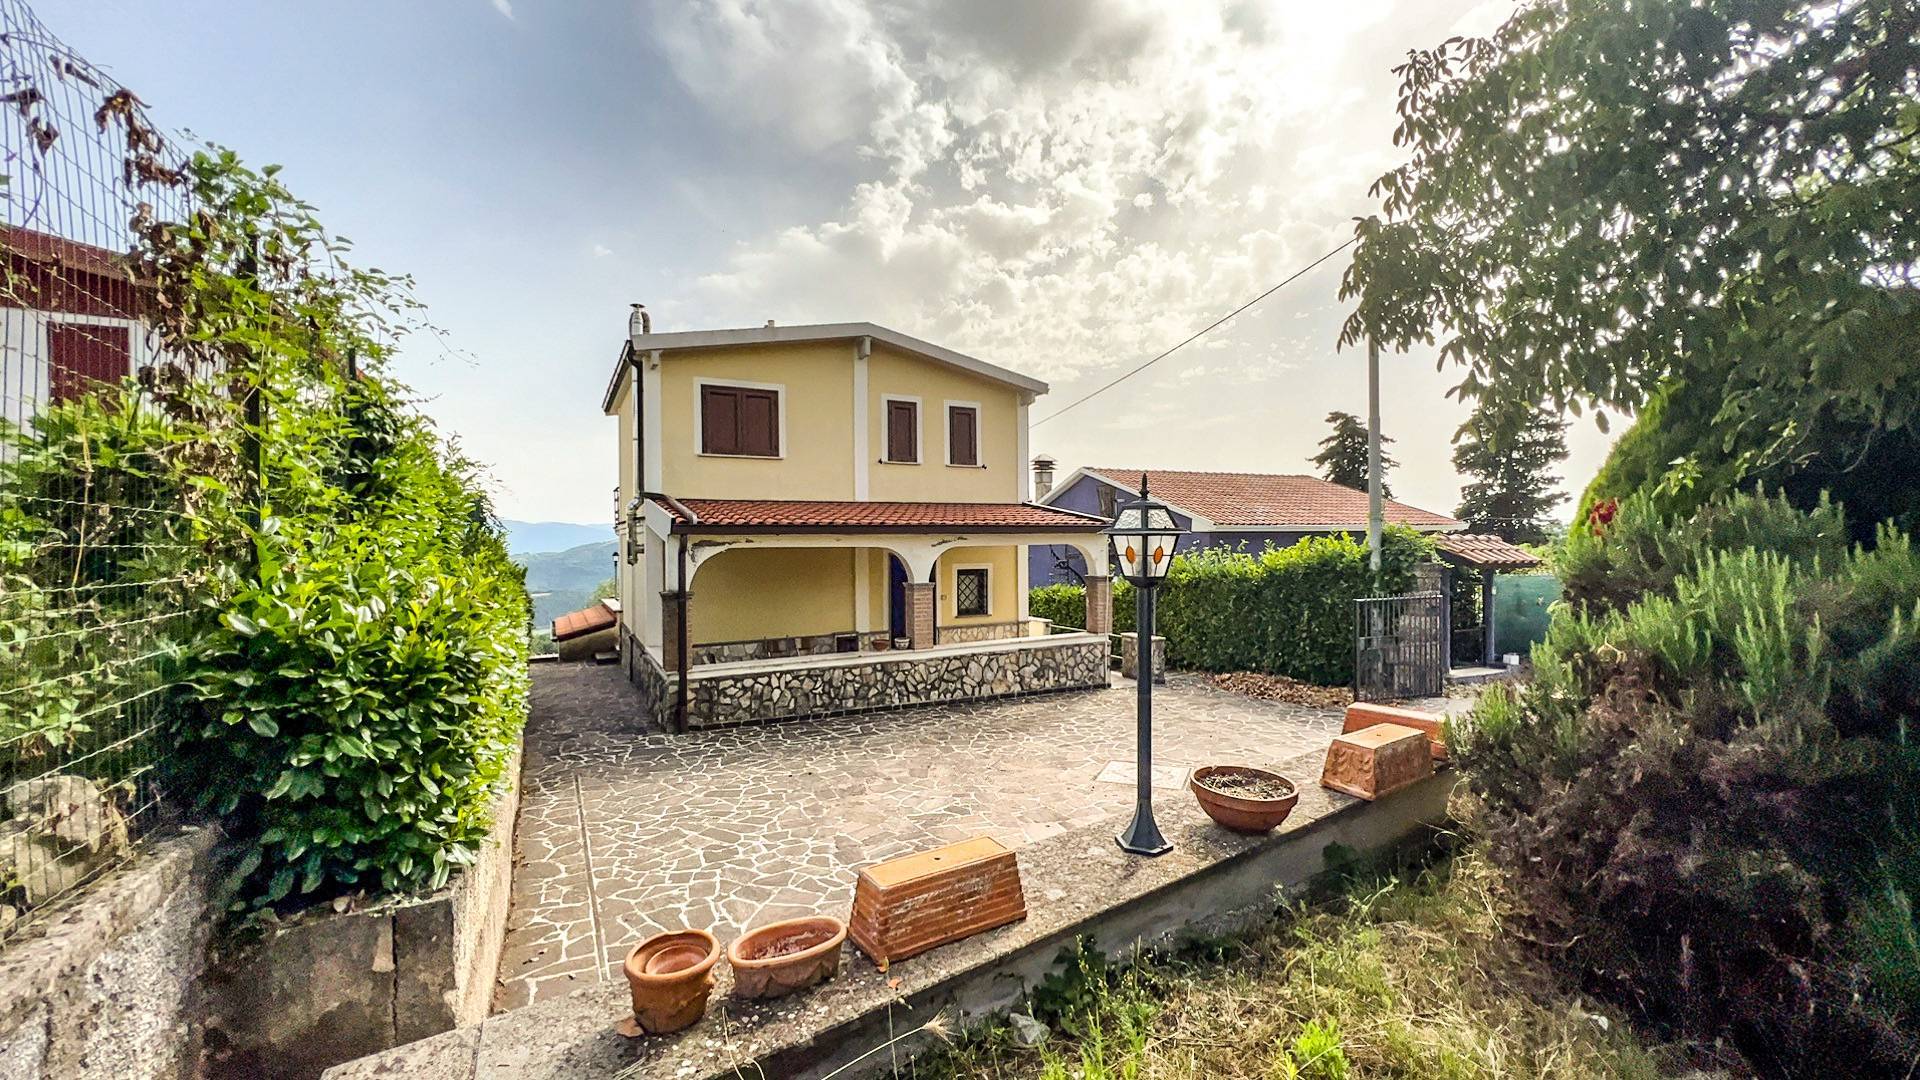 Villa in vendita a Torre Cajetani, 6 locali, prezzo € 129.000 | PortaleAgenzieImmobiliari.it